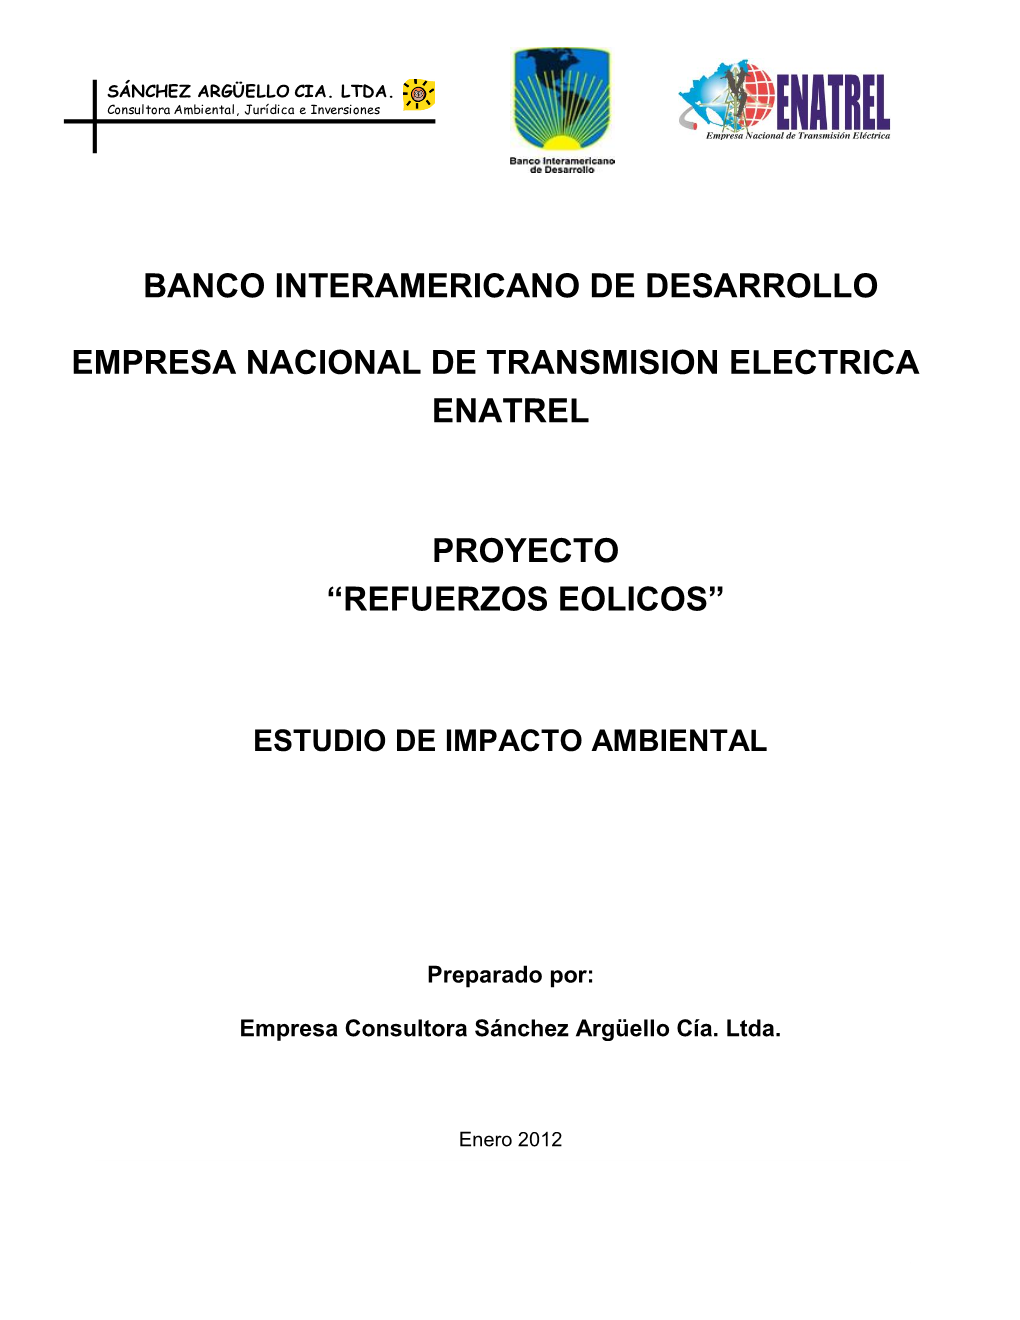 Refuerzos Eólicos” Empresa Nacional De Transmisión Eléctrica ENATREL SÁNCHEZ ARGÜELLO CIA